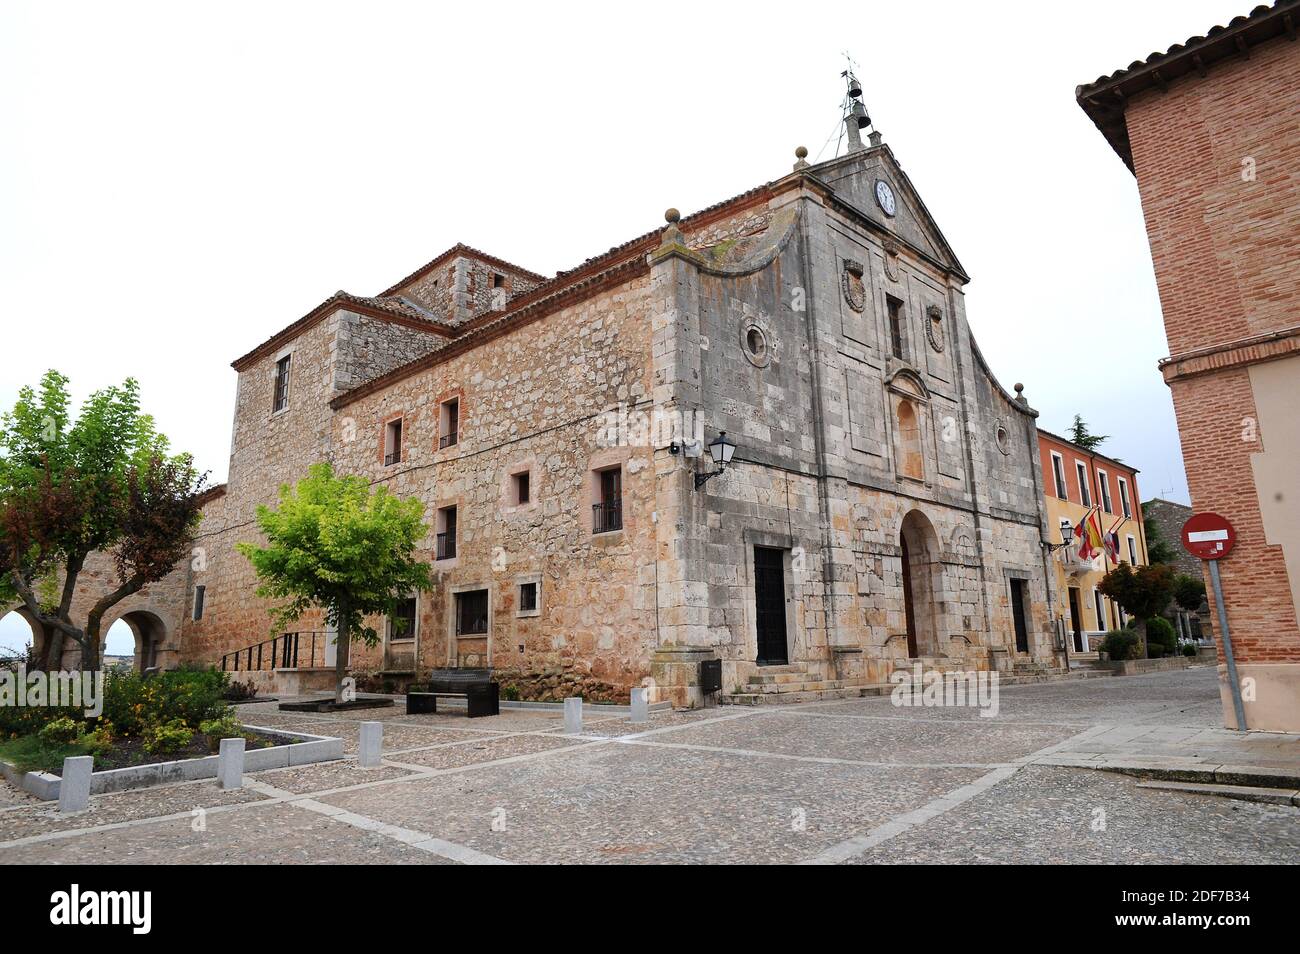 Lerma, Convento de Santa Clara (17th century). Burgos province, Castilla y Leon, Spain. Stock Photo